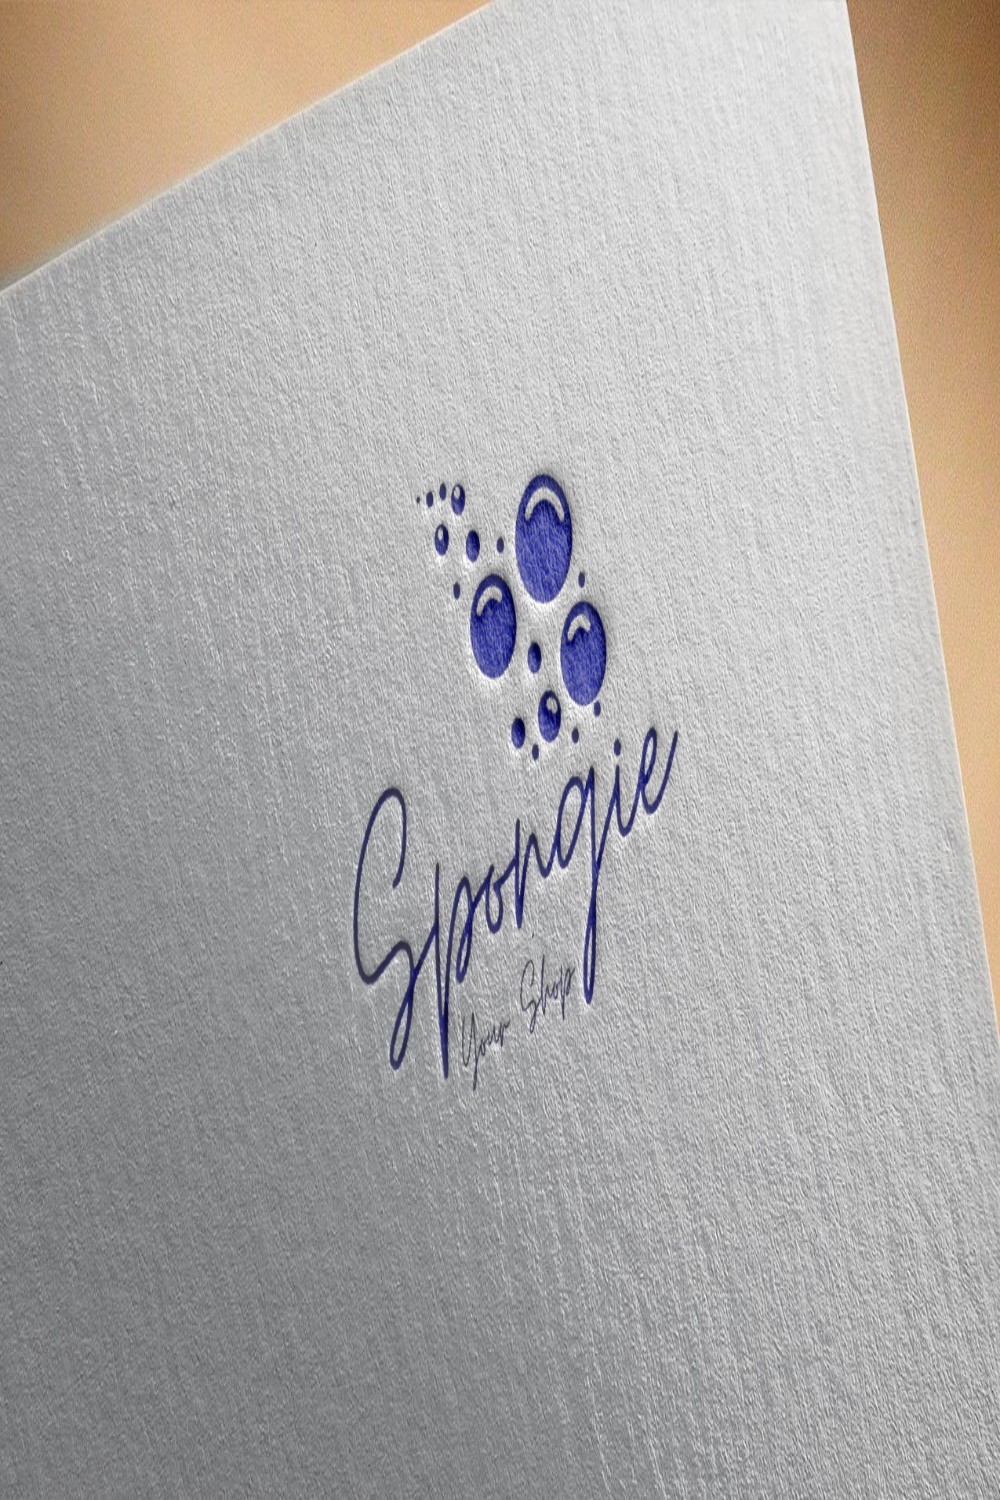 Spongie Logo Design pinterest image.